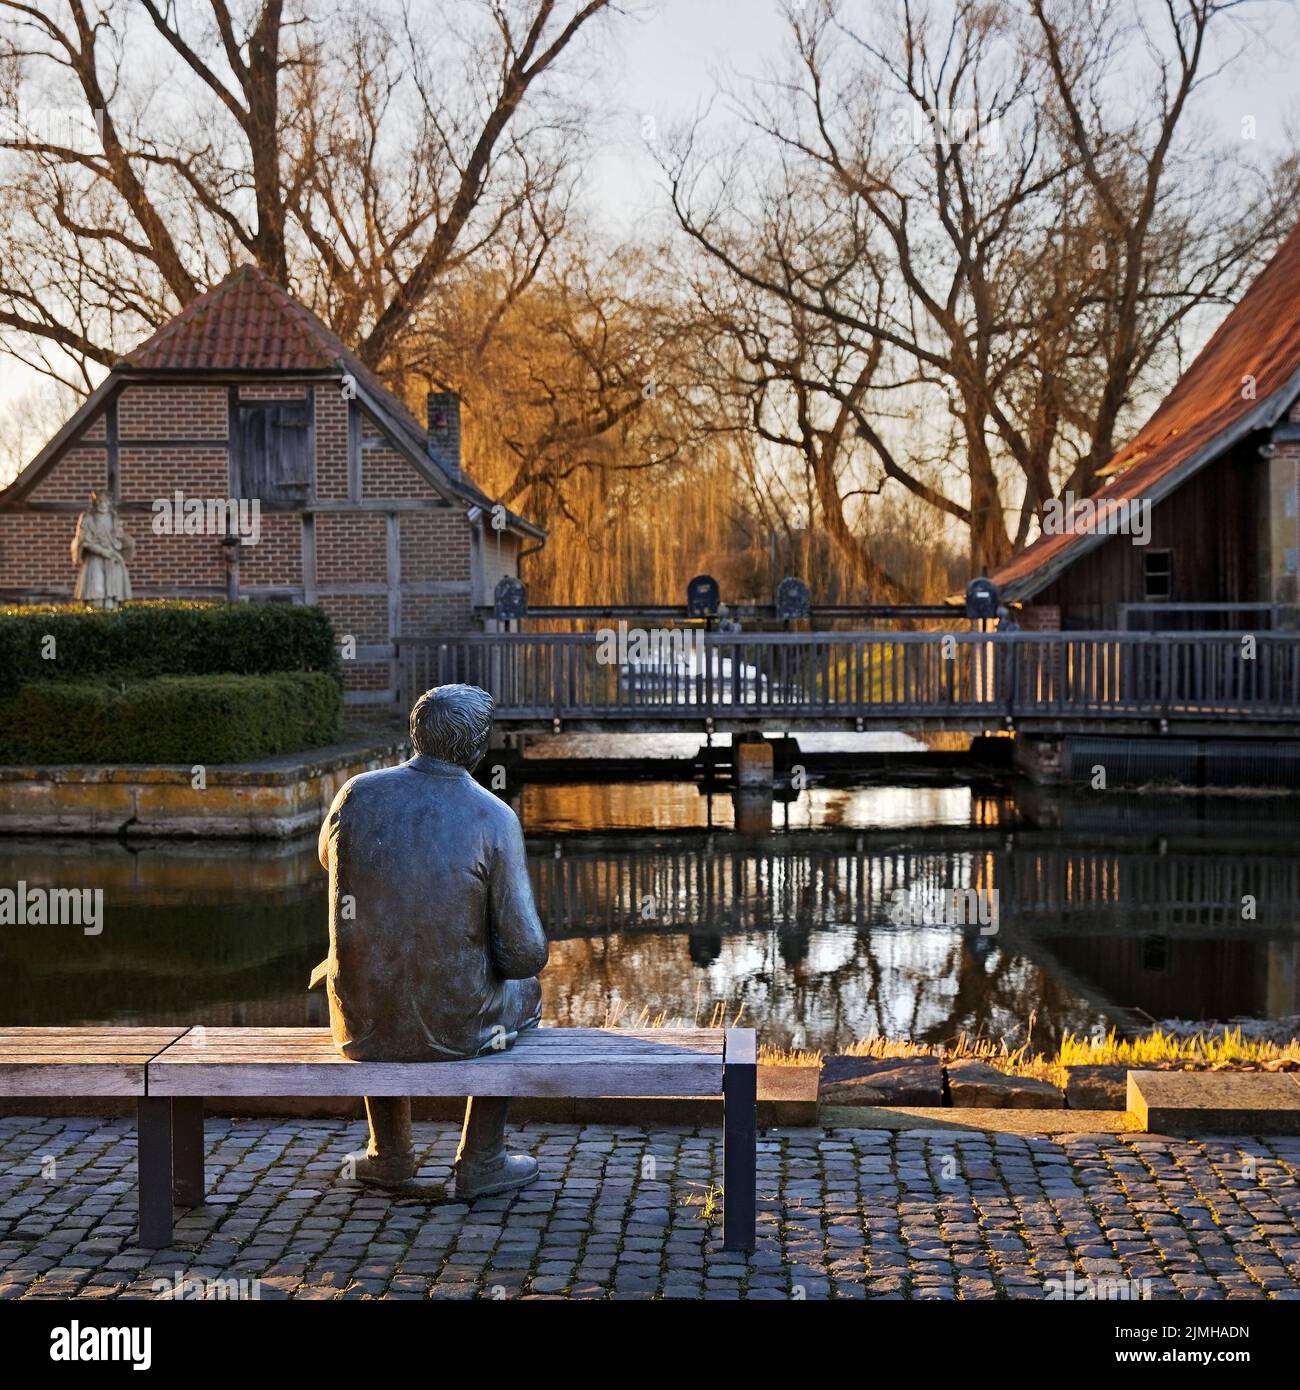 Escultura en bronce del poeta local Paul Advena en el molino de agua de Heek-Nienborg, Heek, Alemania Foto de stock